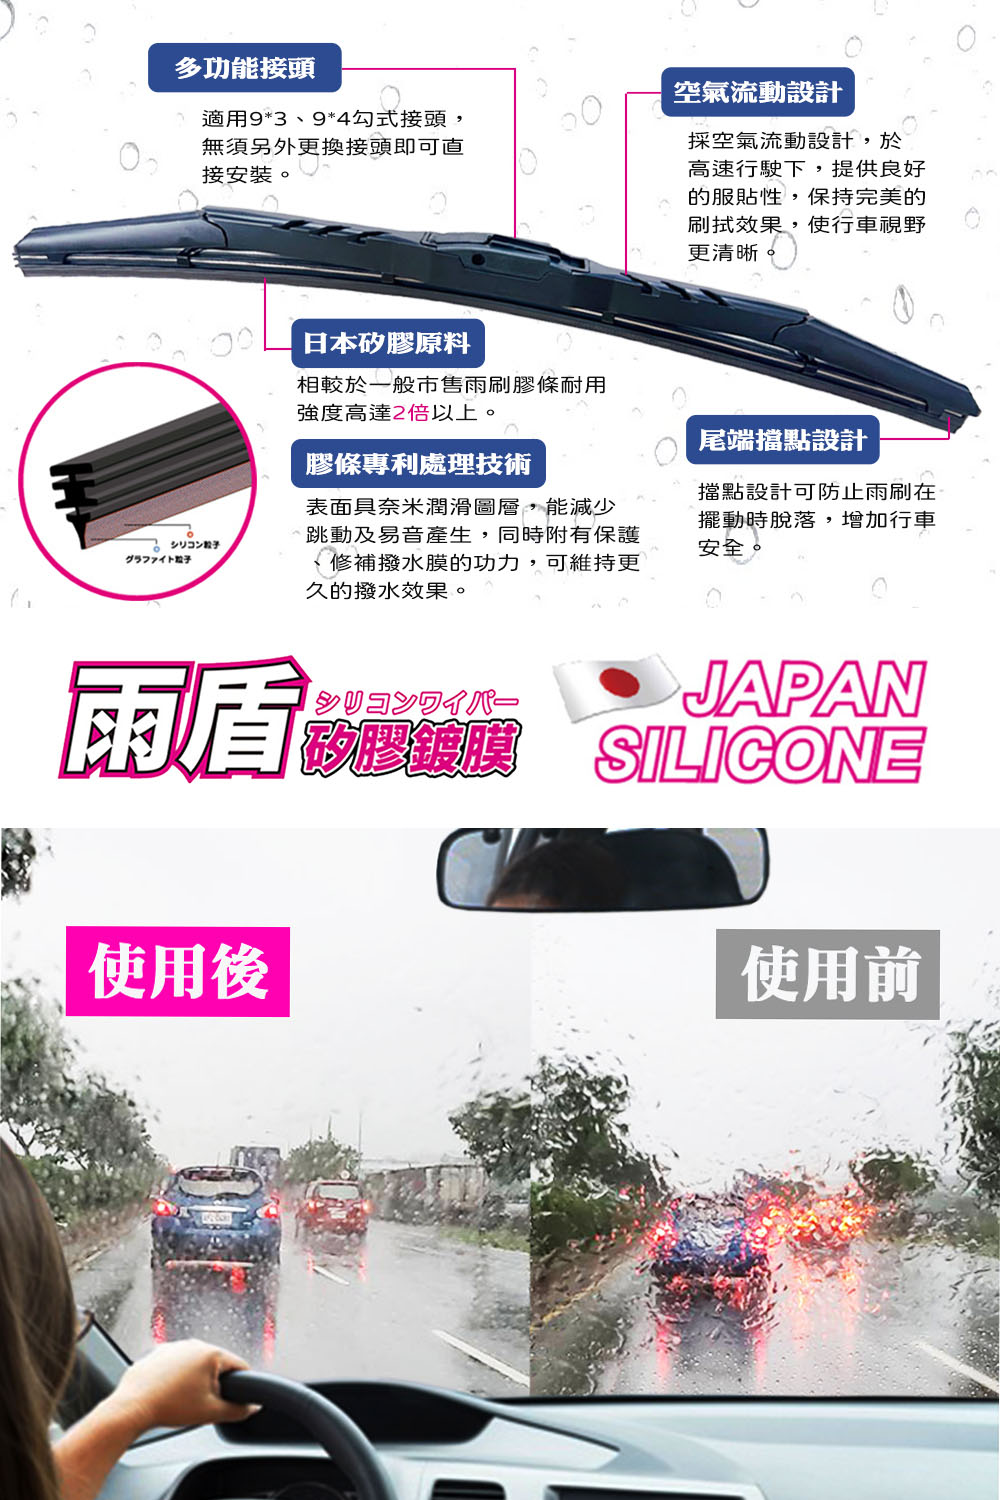 雨盾 Toyota Wish 各代專用矽膠鍍膜雨刷(日本膠條